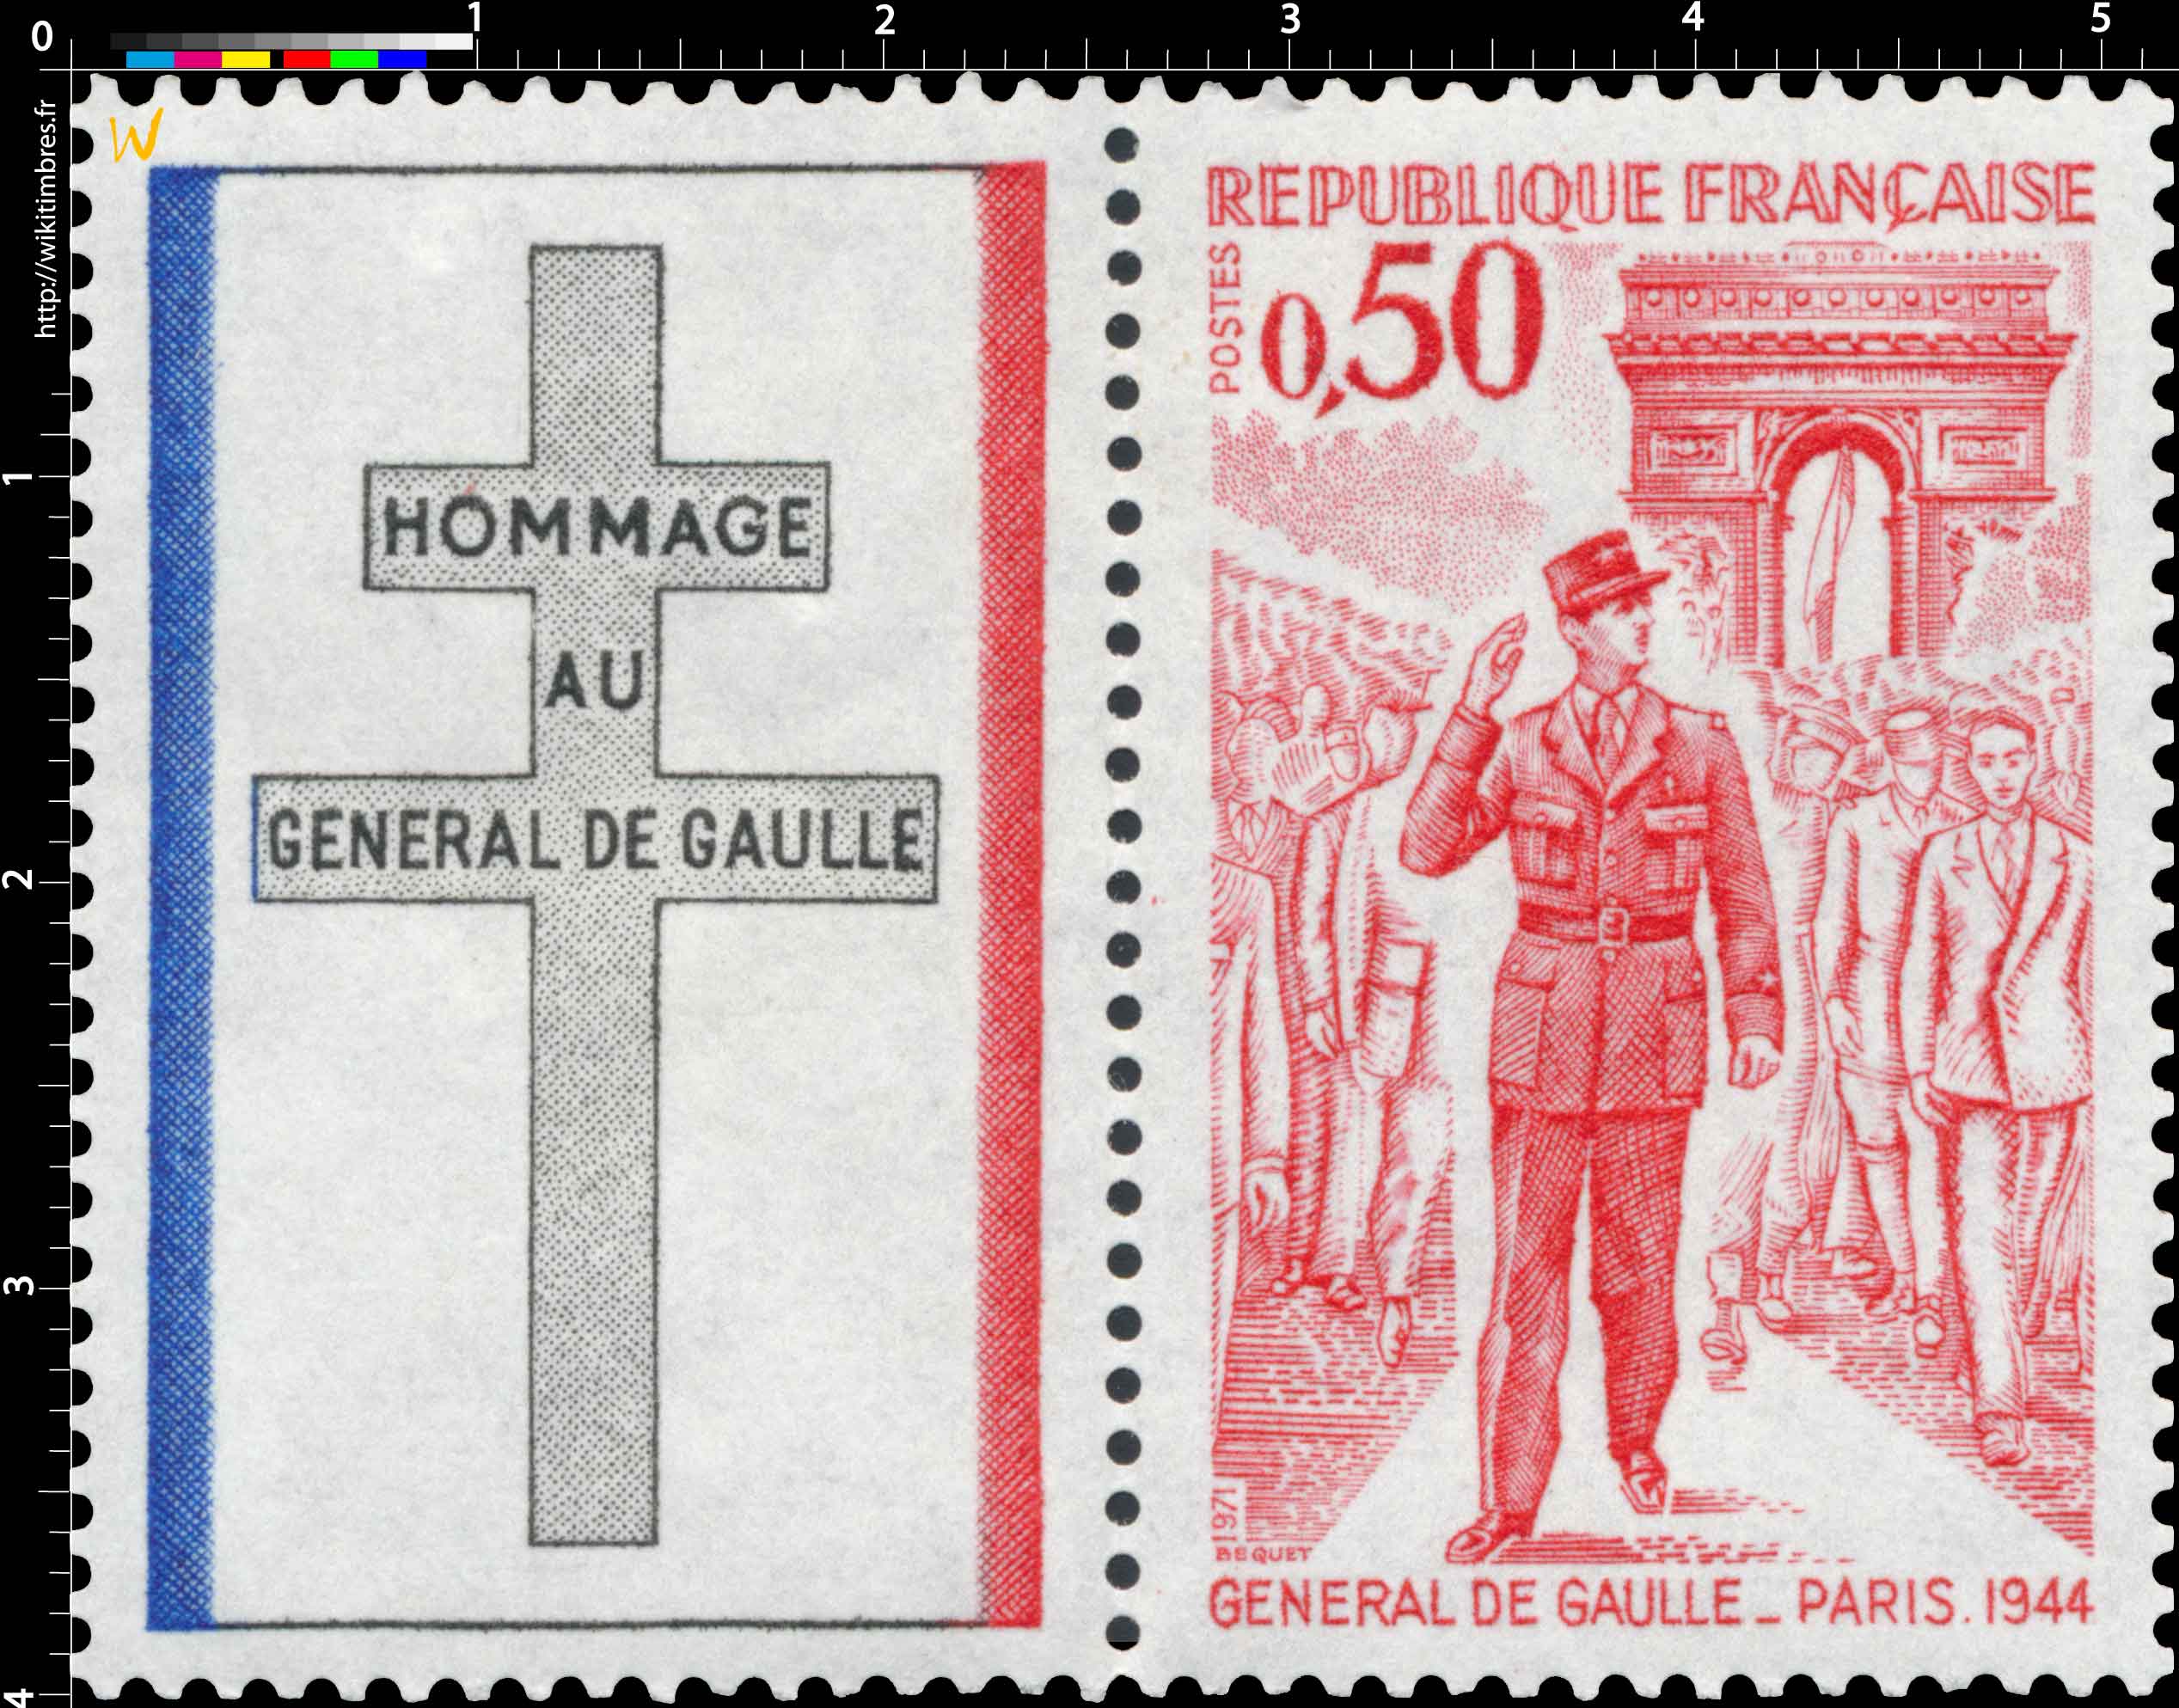 1971 GÉNÉRAL DE GAULLE. PARIS.1944